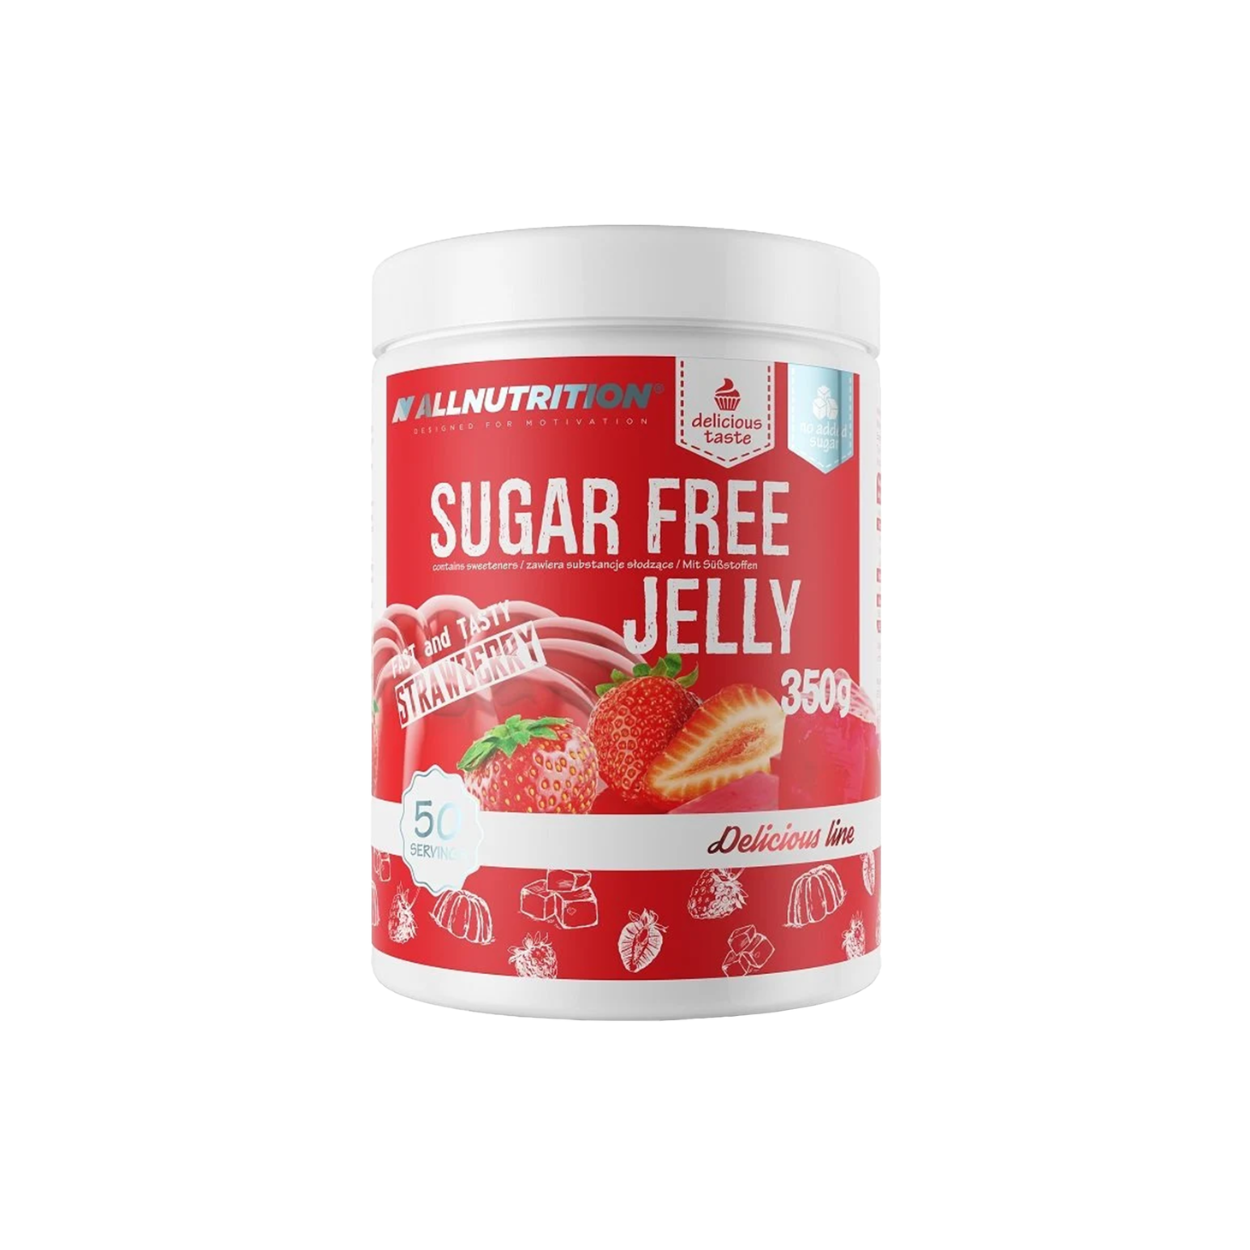 Allnutrition Delicious Line Sugar Free Jelly Strawberry (350g)